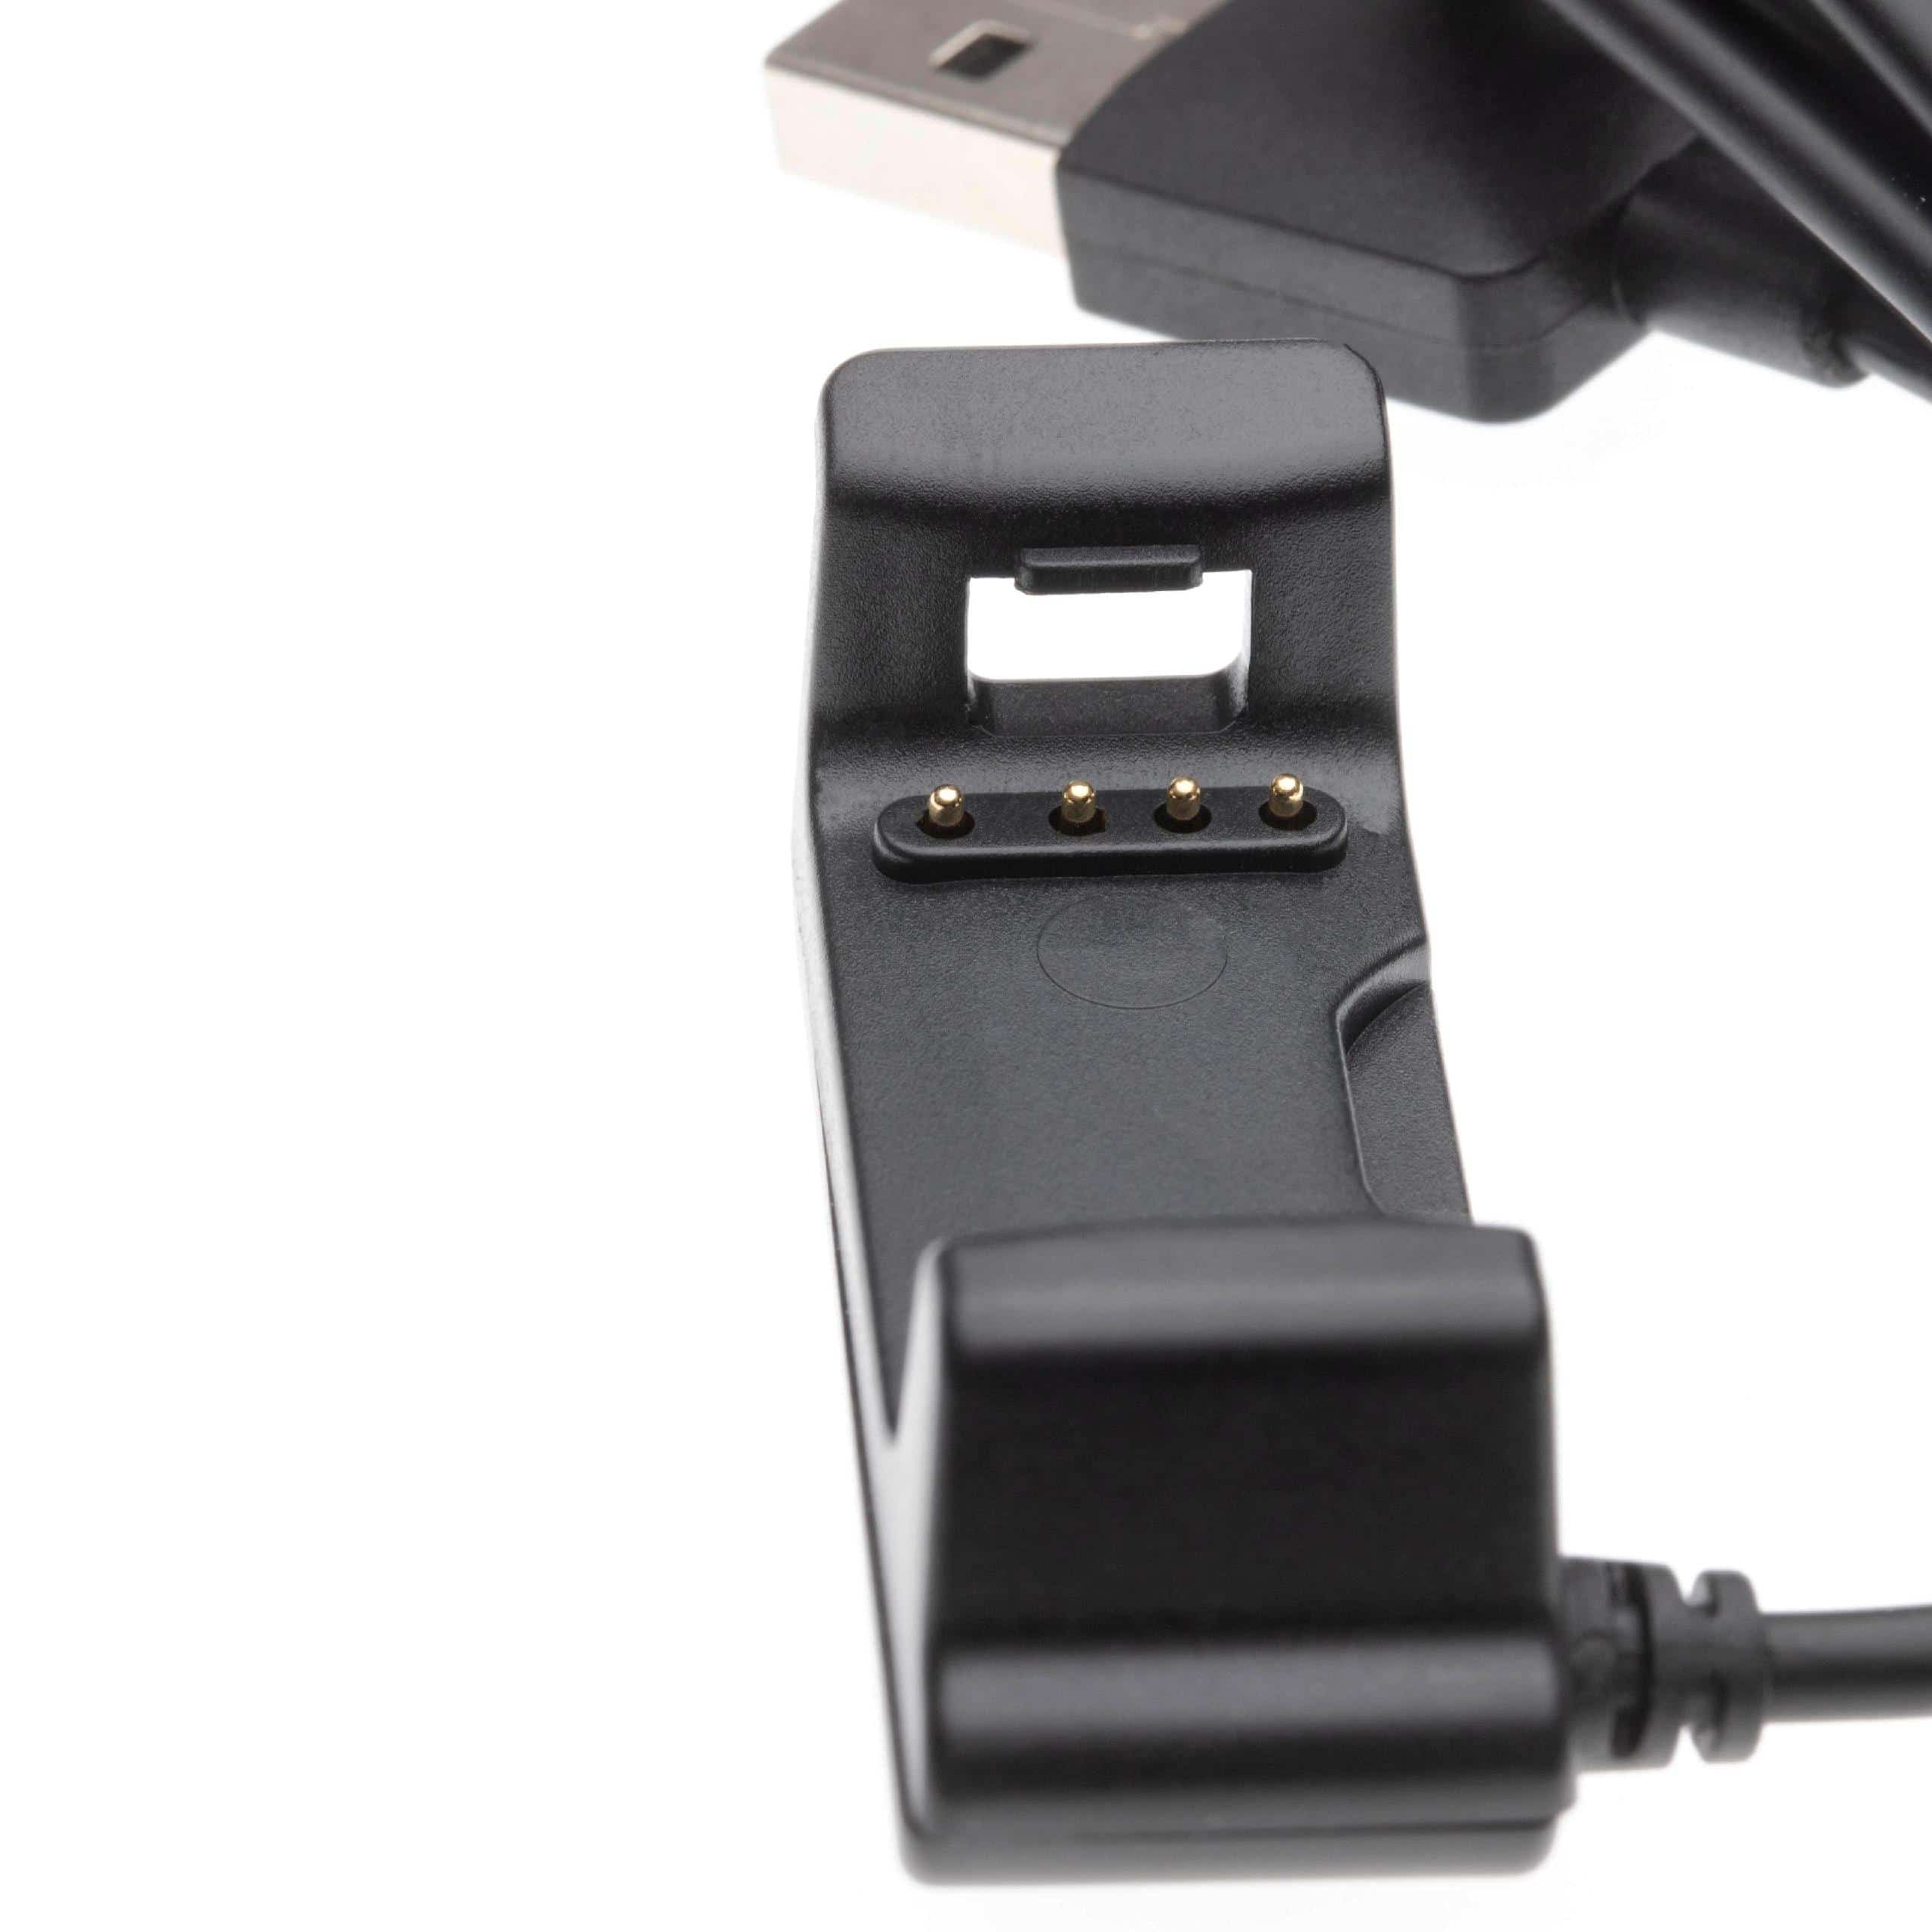 Cable de carga USB para smartwatch Garmin Vivoactive HR - negro 100 cm